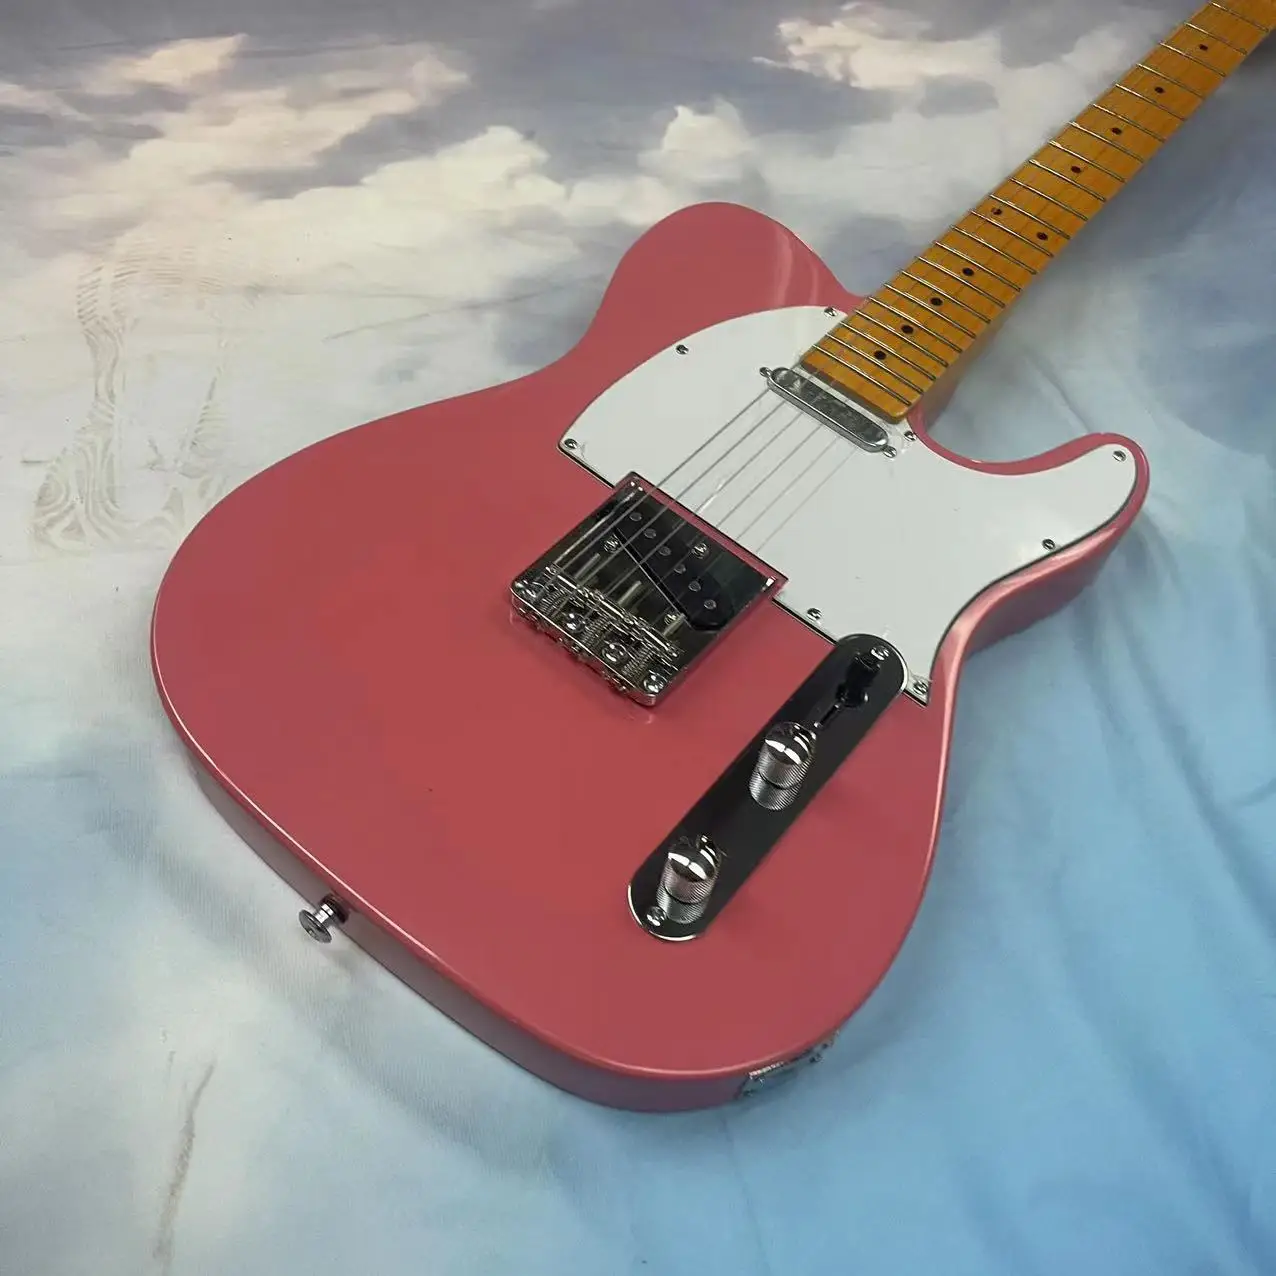 

Электрическая гитара Tele с разрезом на 6 струн, розовый корпус, с высоким блеском, белая защитная пластина, кленовый гриф, Кленовая дорожка, одна